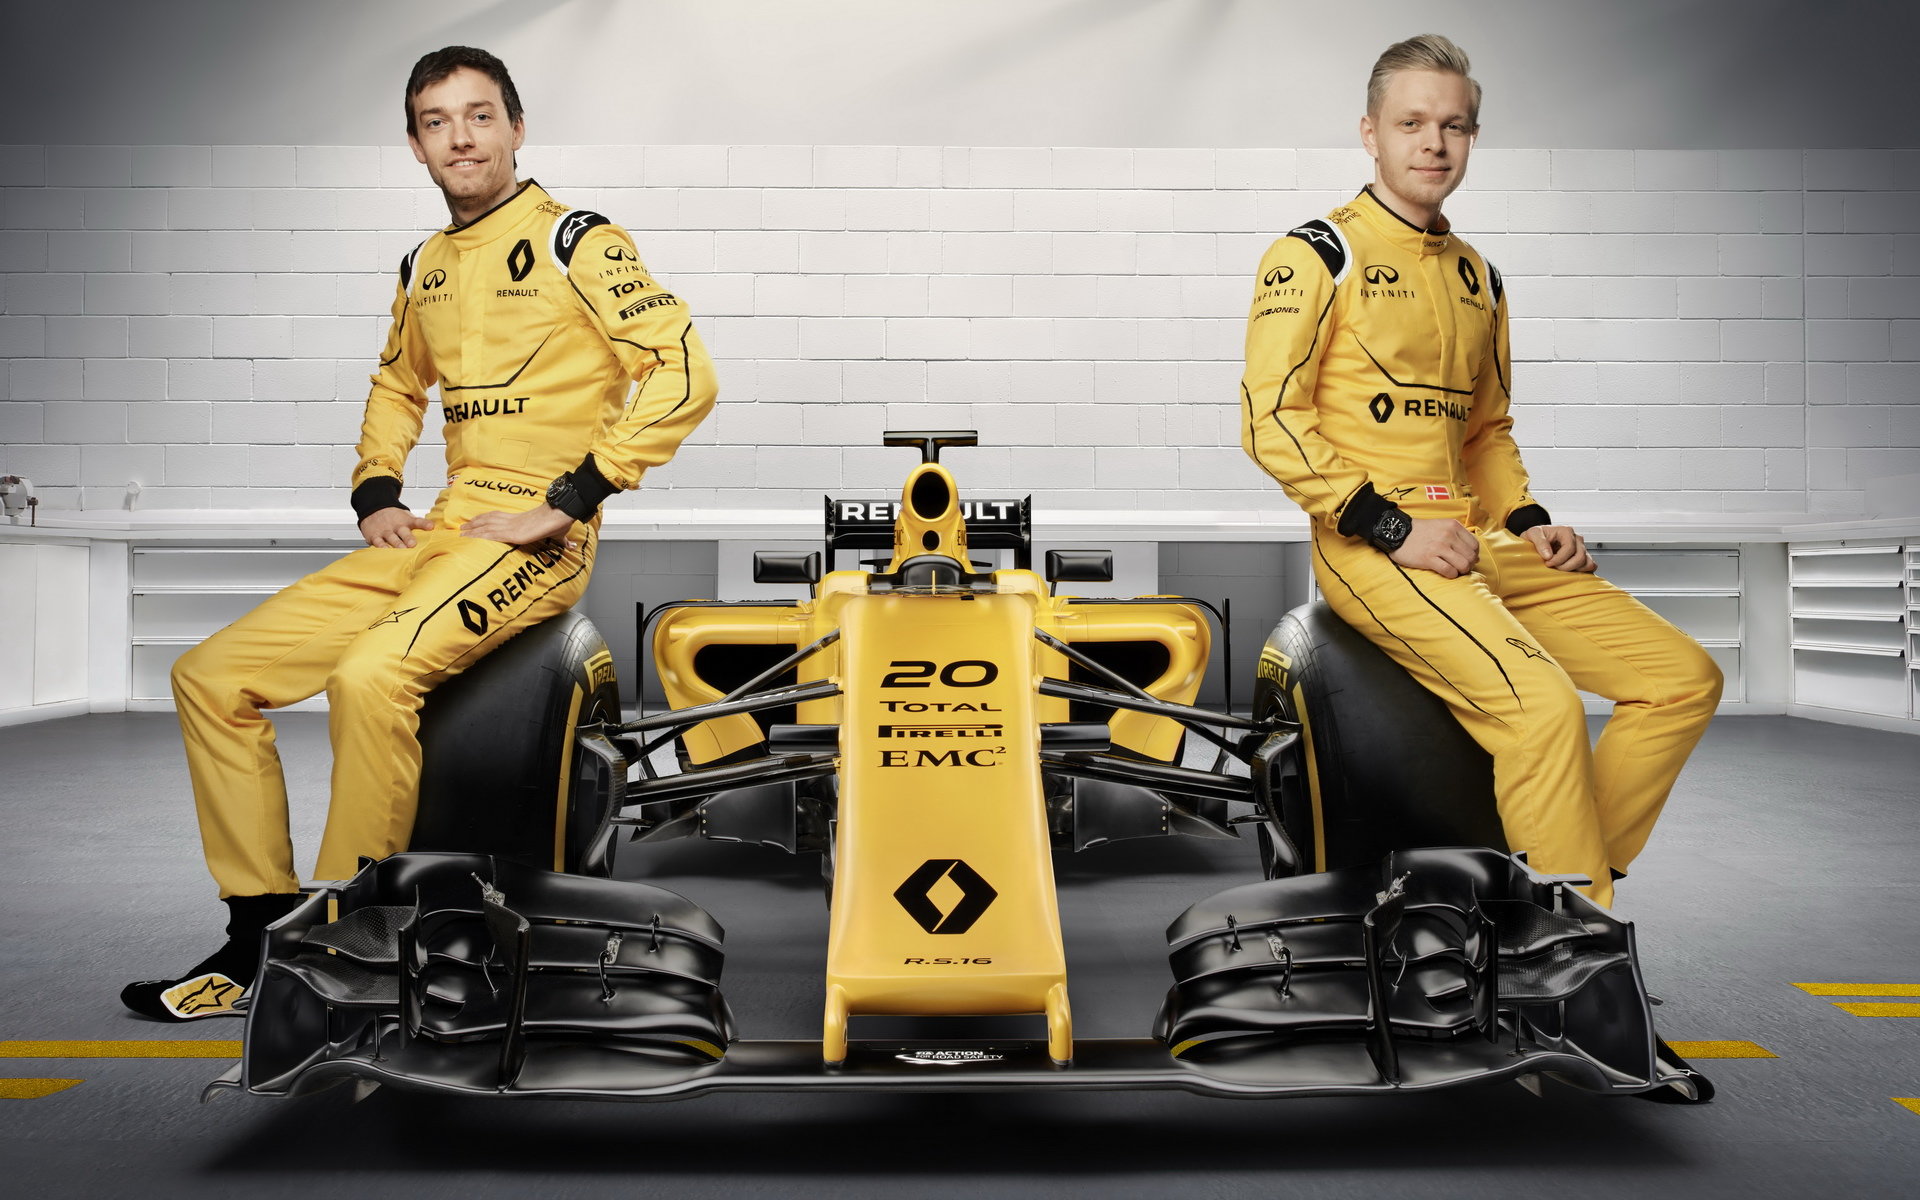 Šéf Renaultu oba své jezdce chválí - podávají s nekonkurenceschopným vozem dobré výkony a stále se zlepšují